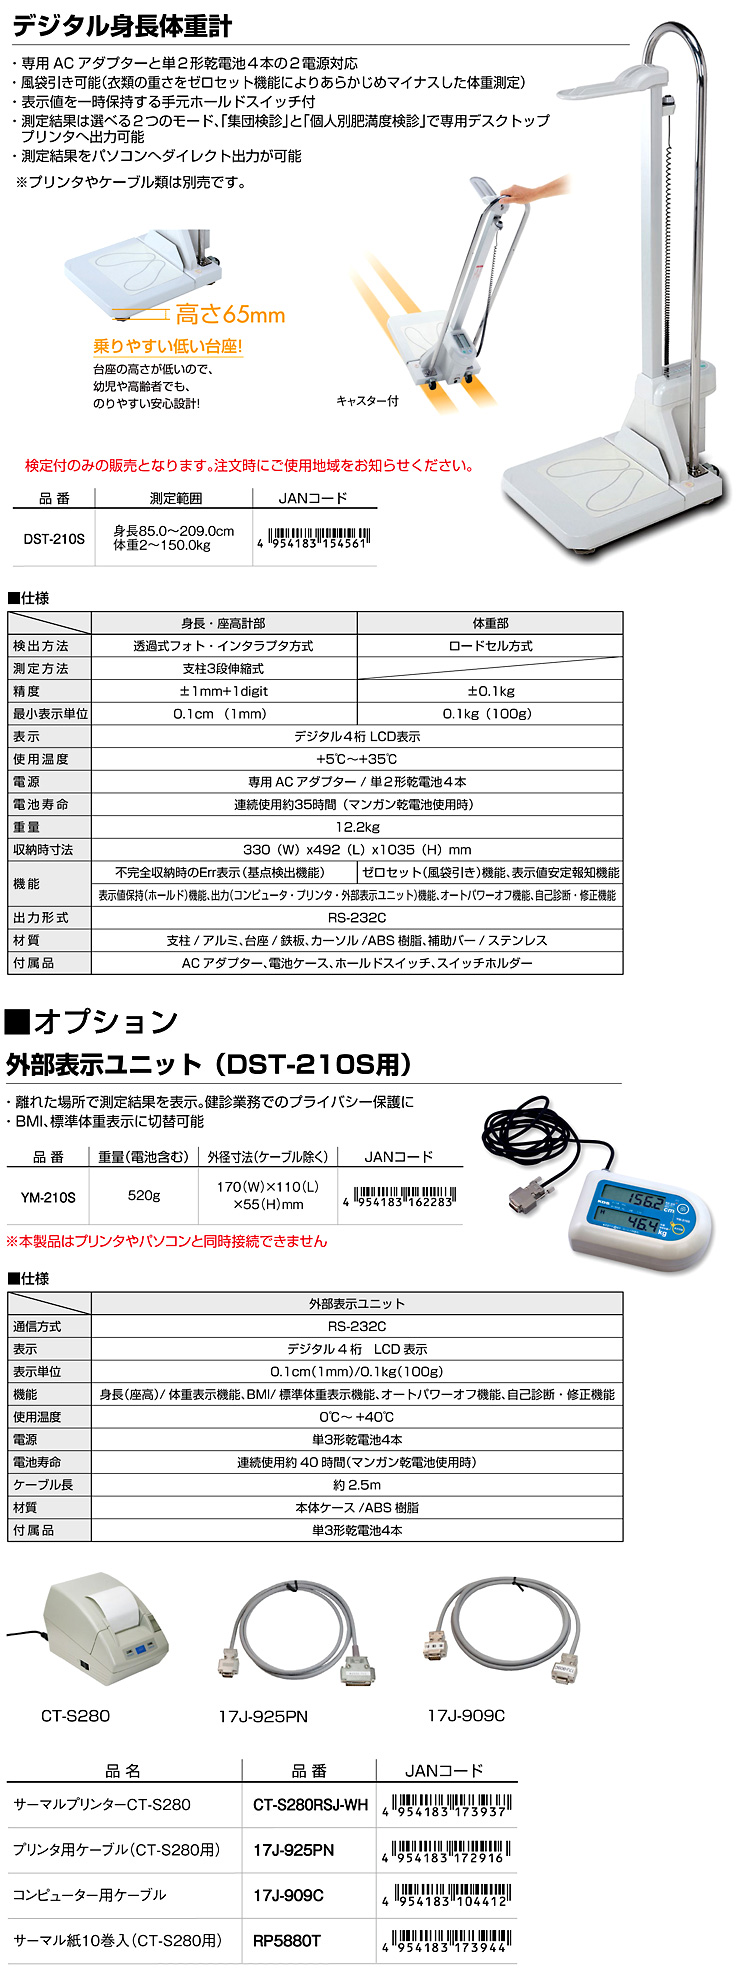 ムラテックKDS デジタル身長計 DSN-90 - 4